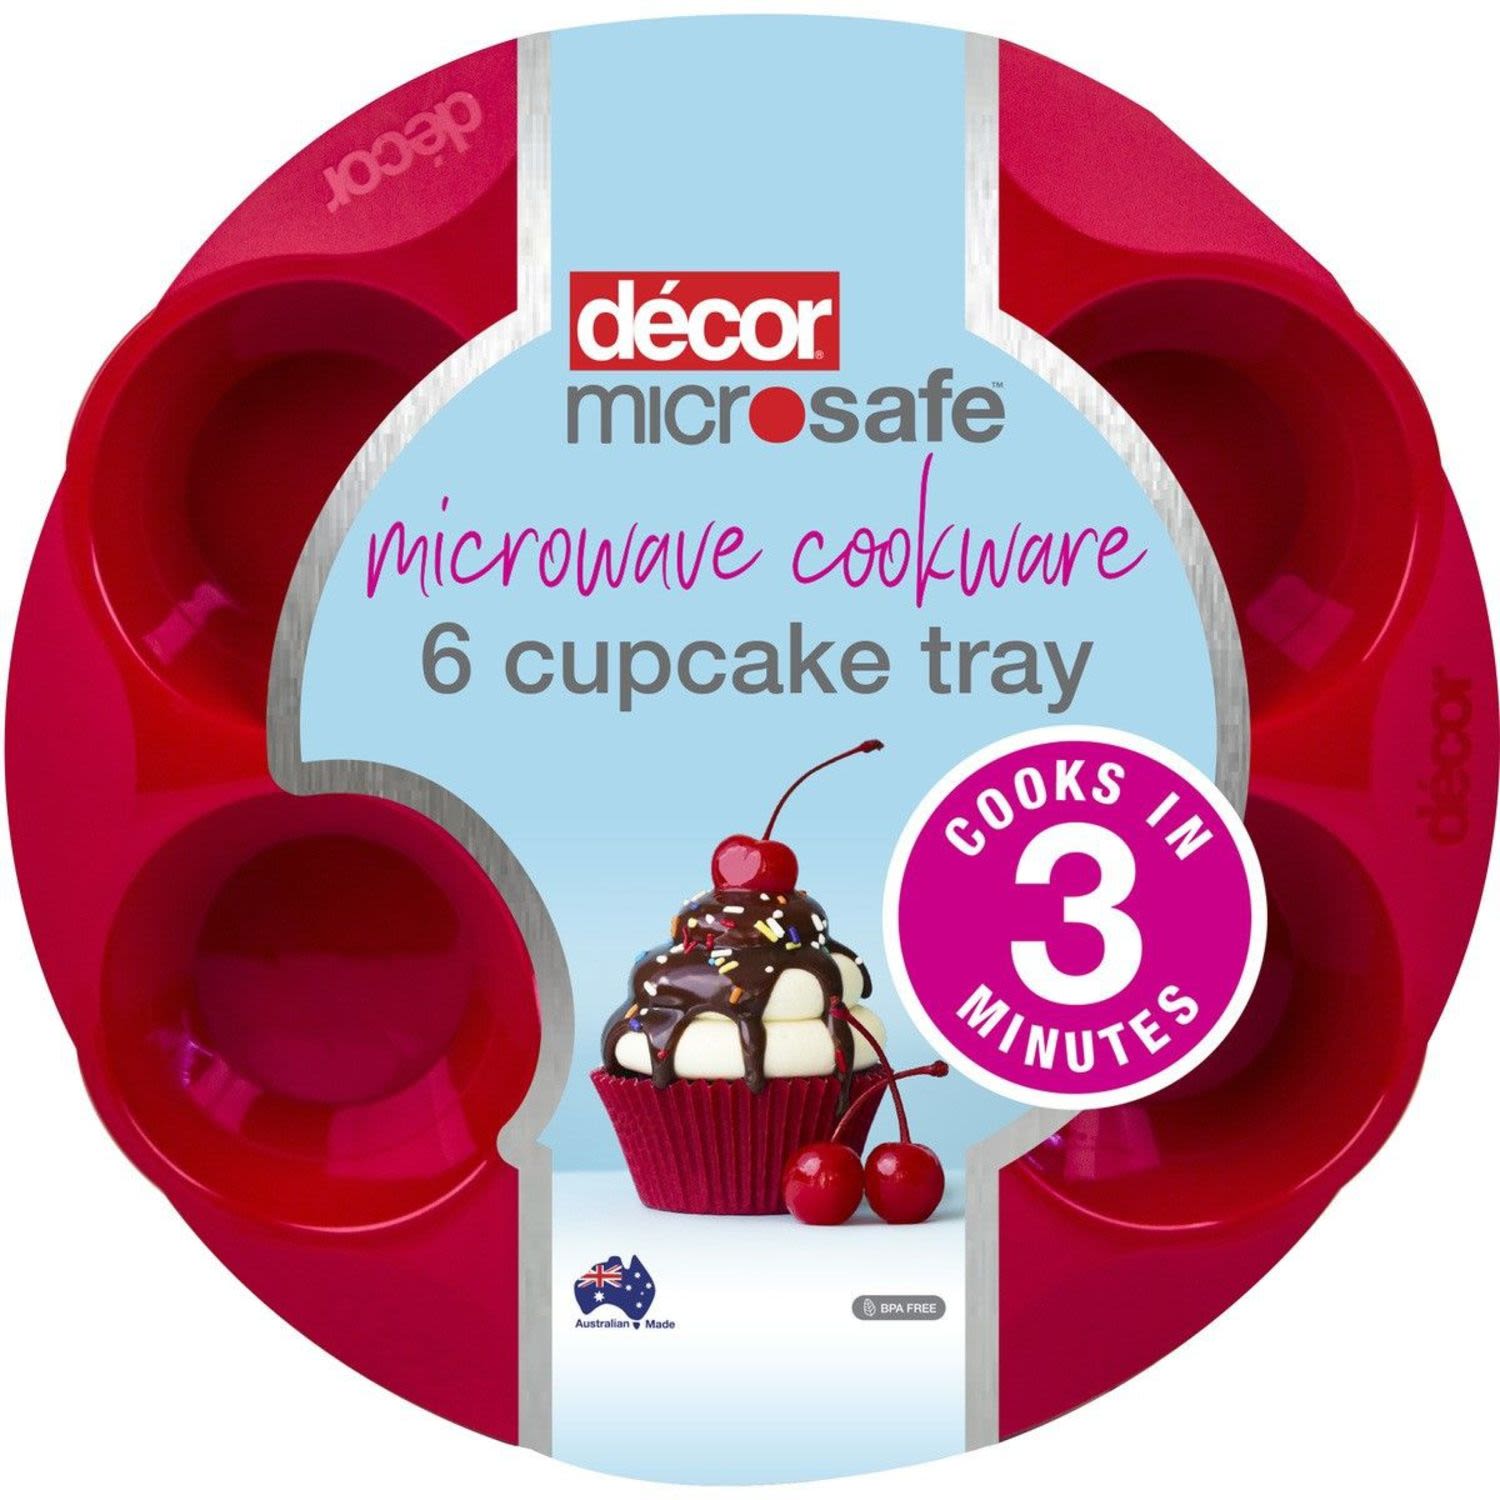 Decor Microsafe 6 Cupcake Tray, 1 Each